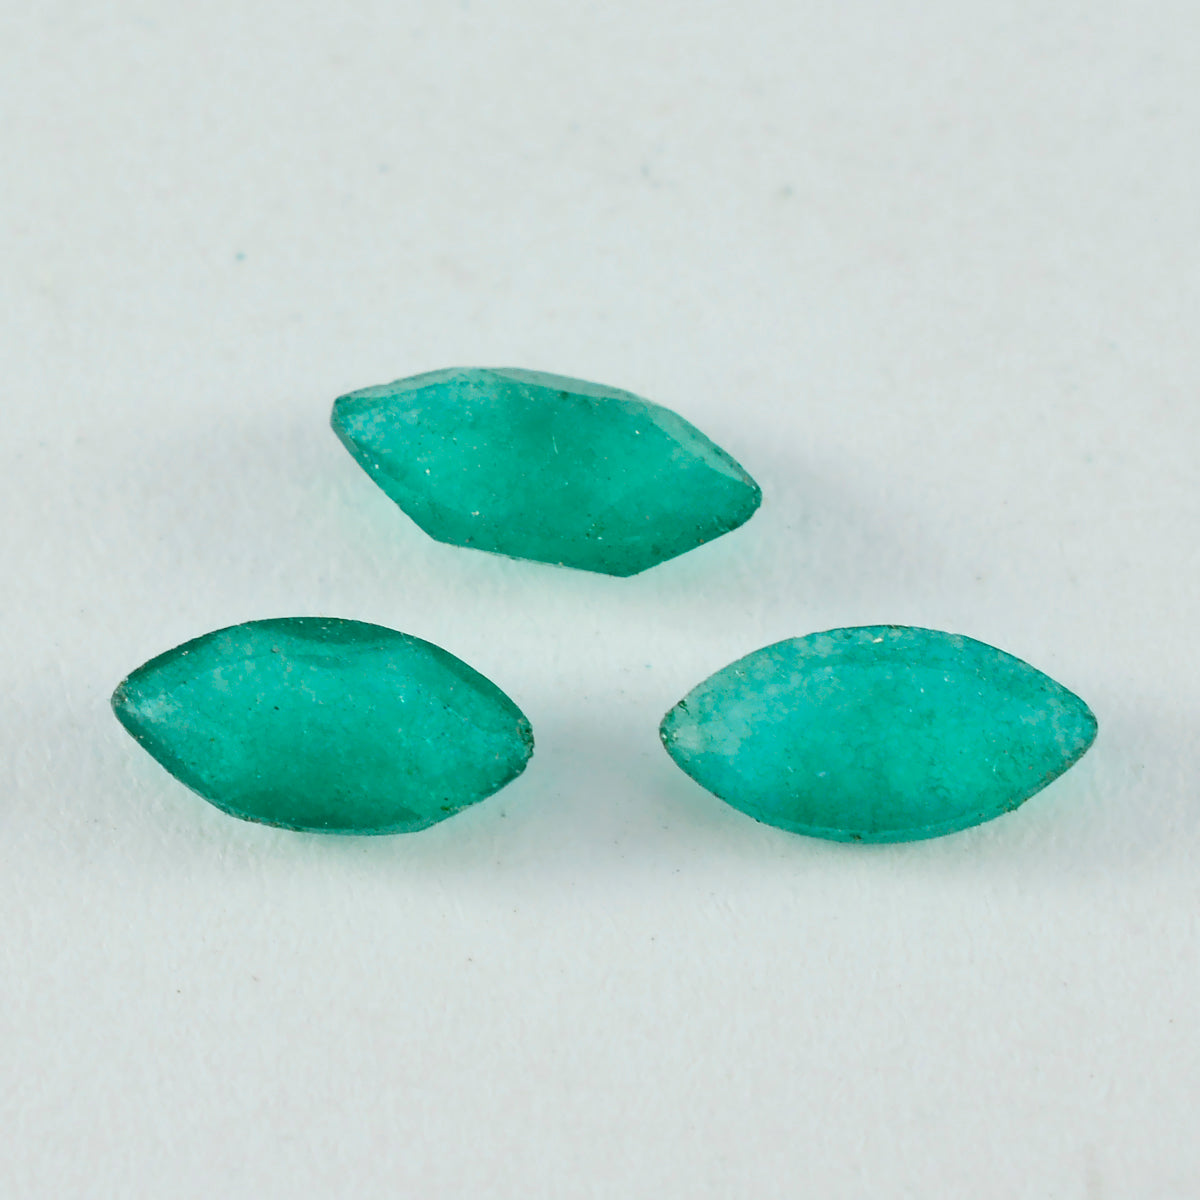 riyogems 1шт настоящая зеленая яшма ограненная 9x18 мм драгоценный камень в форме маркиза отличное качество